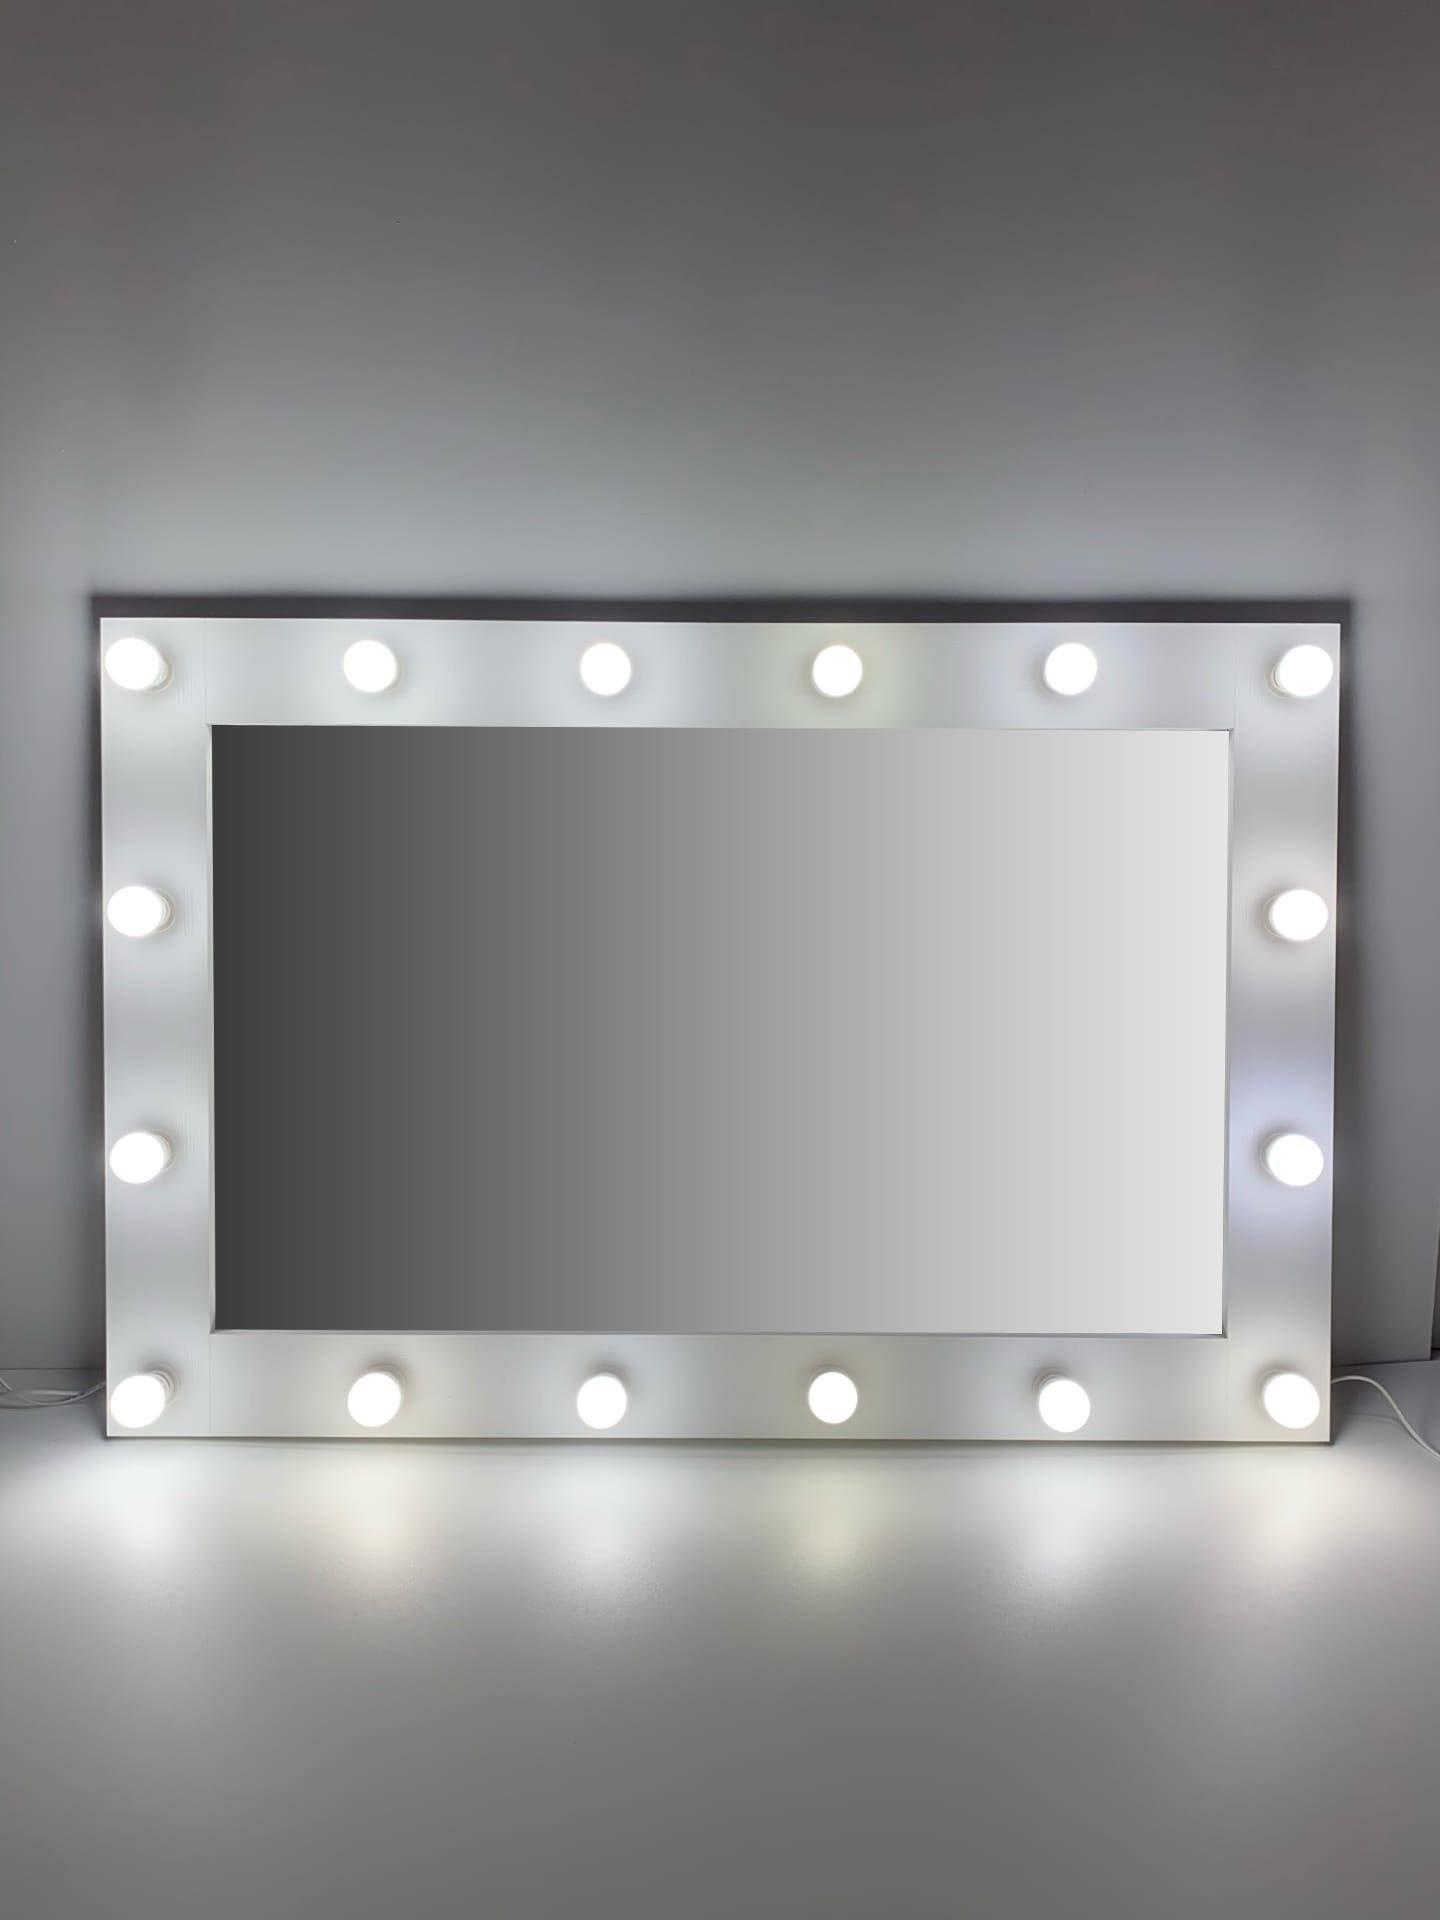 91053077 Гримерное зеркало с лампочками 80x120 см цвет белый STLM-0458987 BEAUTYUP